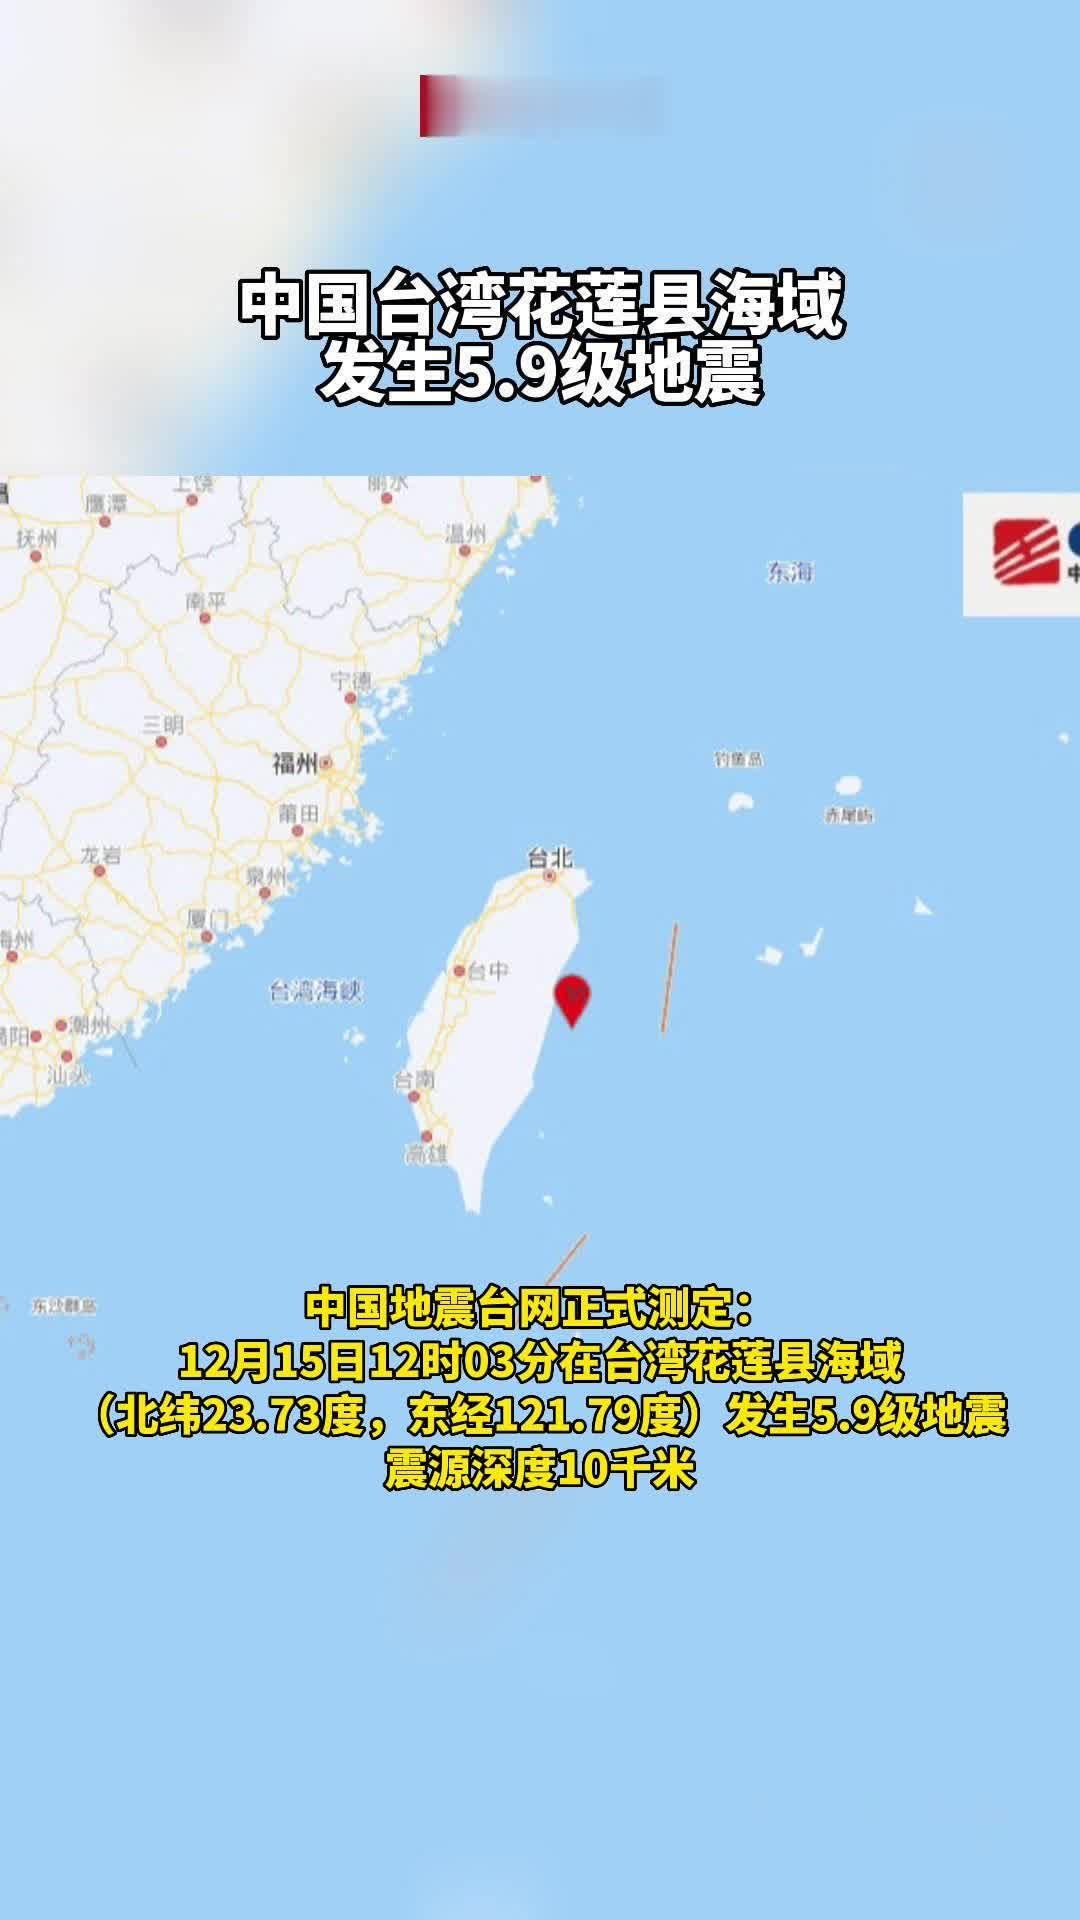 台湾花莲县5.1级地震 无伤亡损毁报告_凤凰网视频_凤凰网